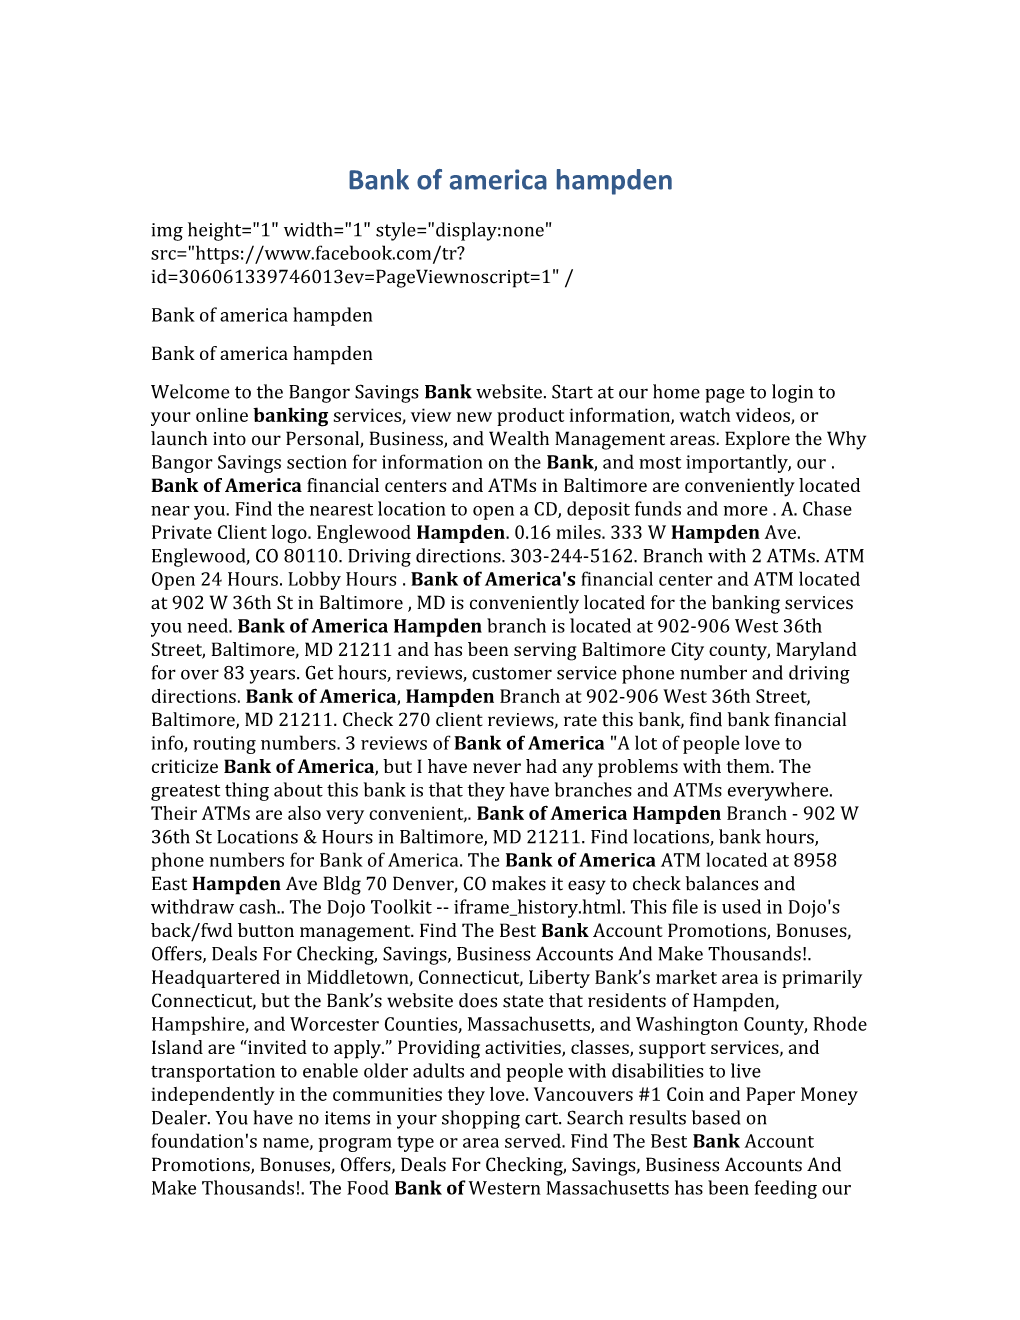 Bank of America Hampden